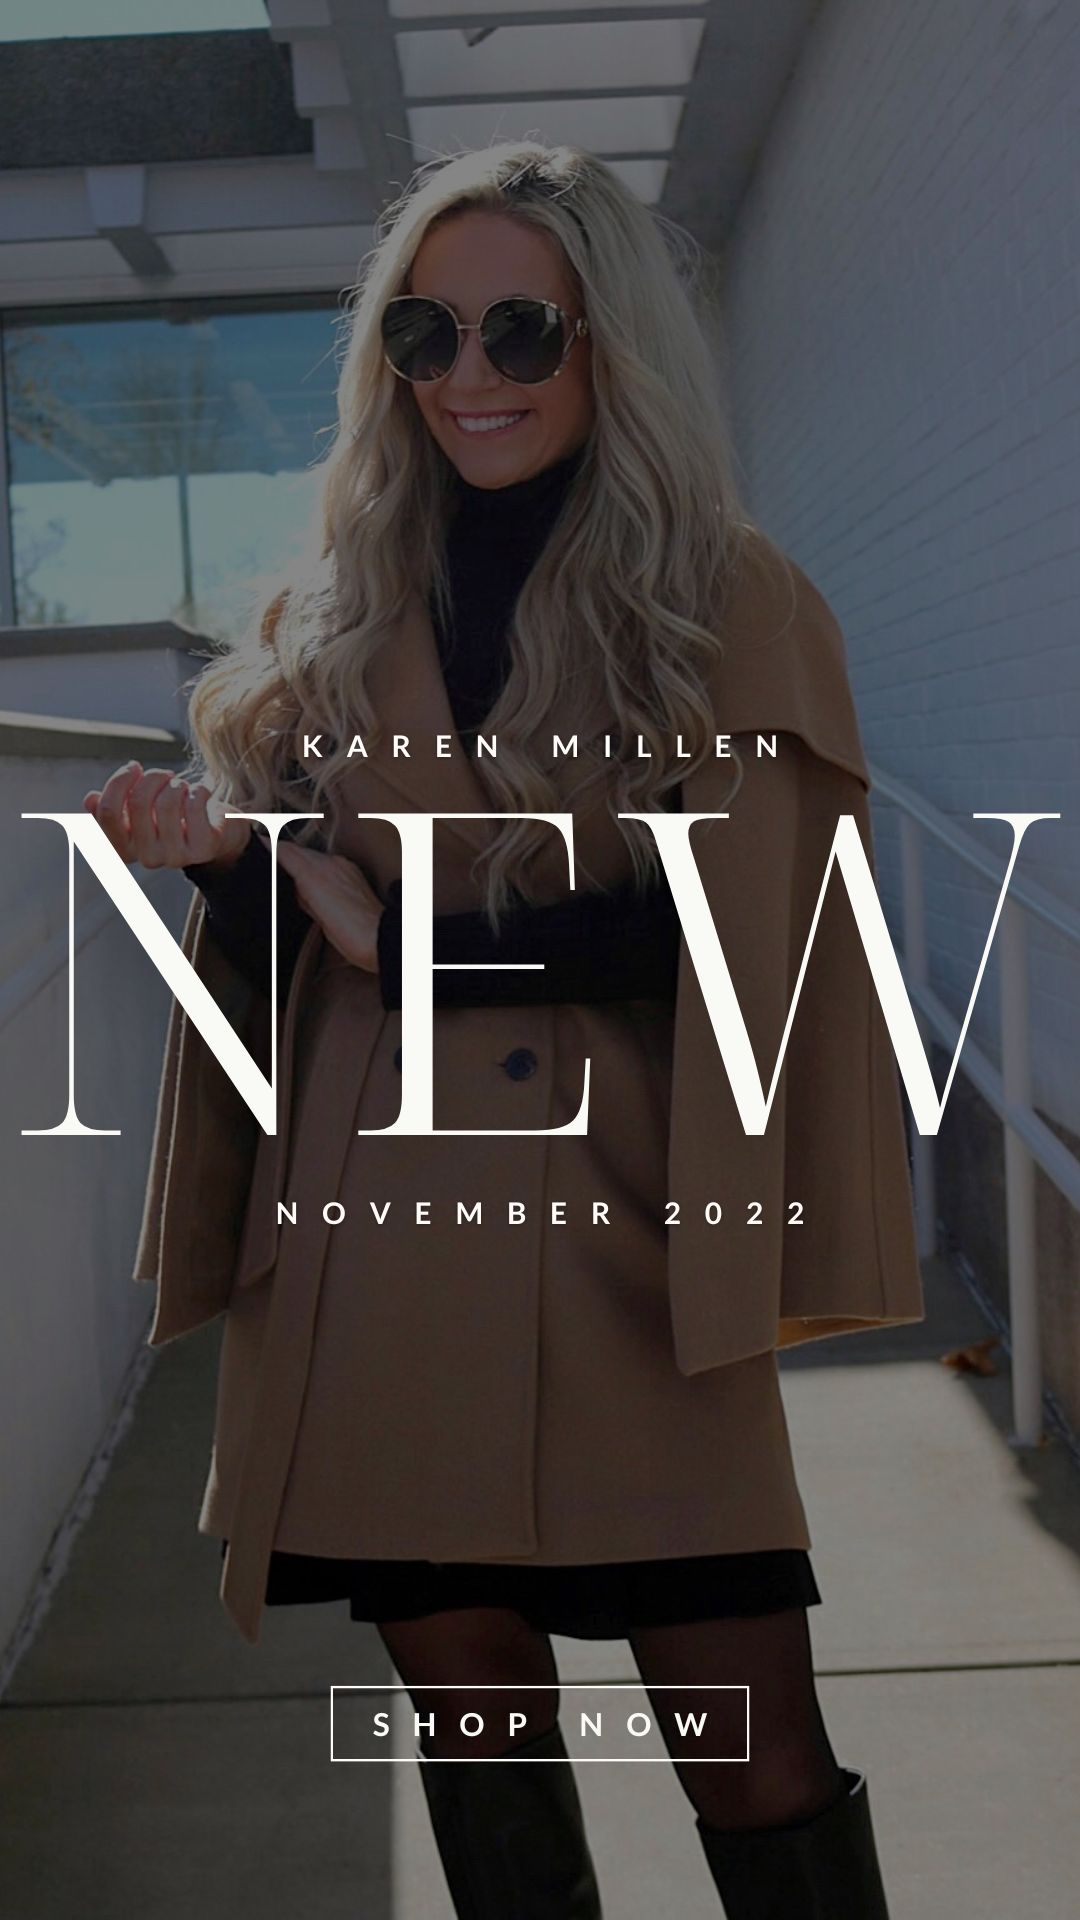 New In: Karen Millen November 2022